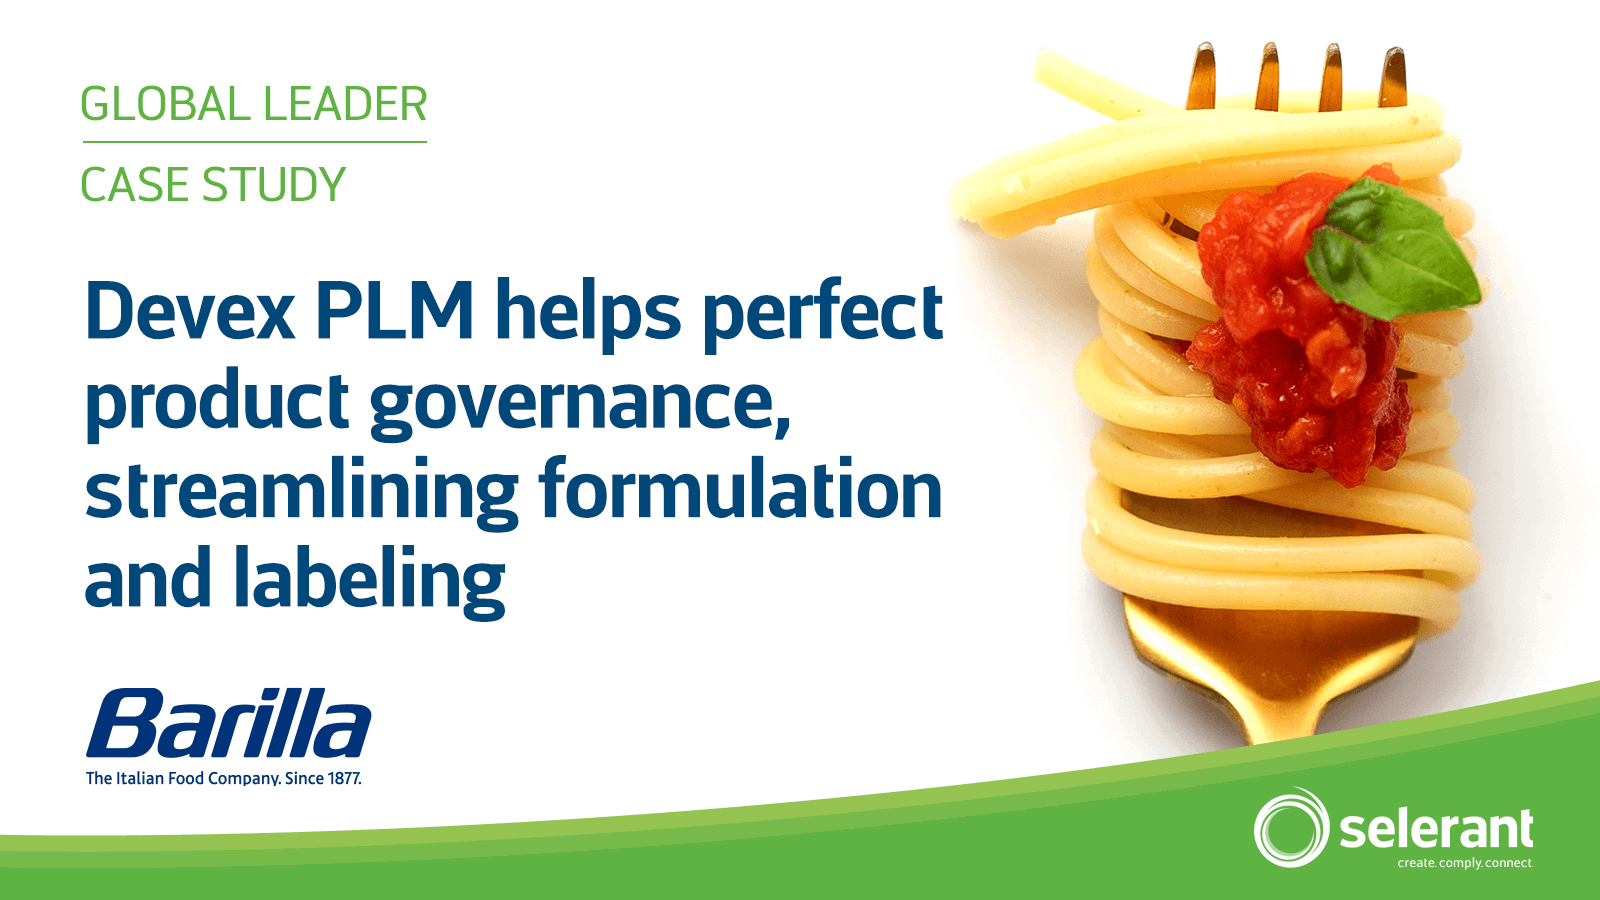 全球最大的面食公司通过 PLM 完善产品开发治理、简化配方和营养标签